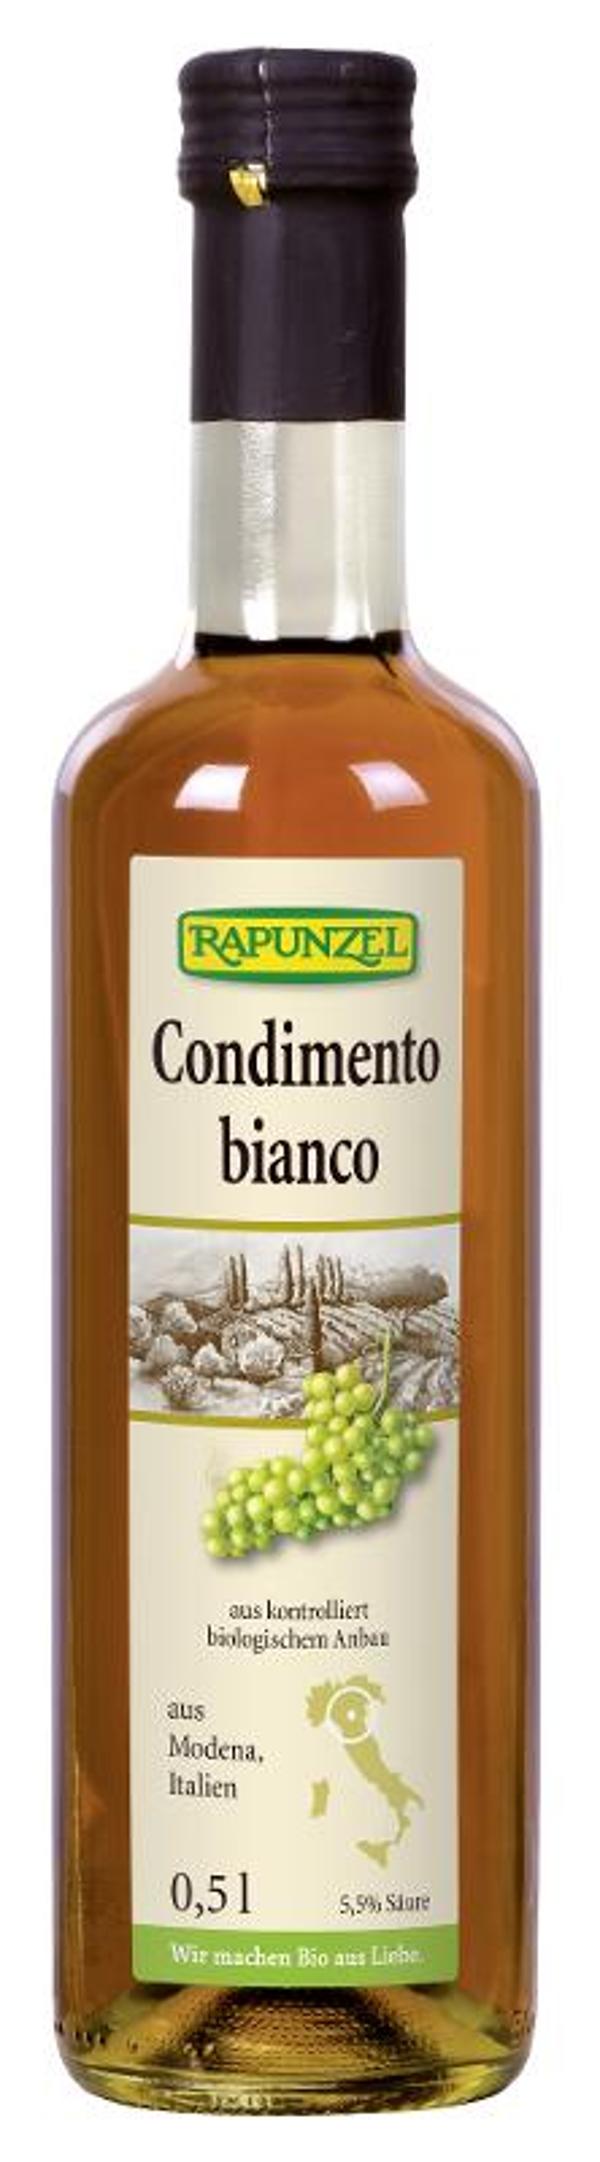 Produktfoto zu Rapunzel Condimento Bianco - 0,5l